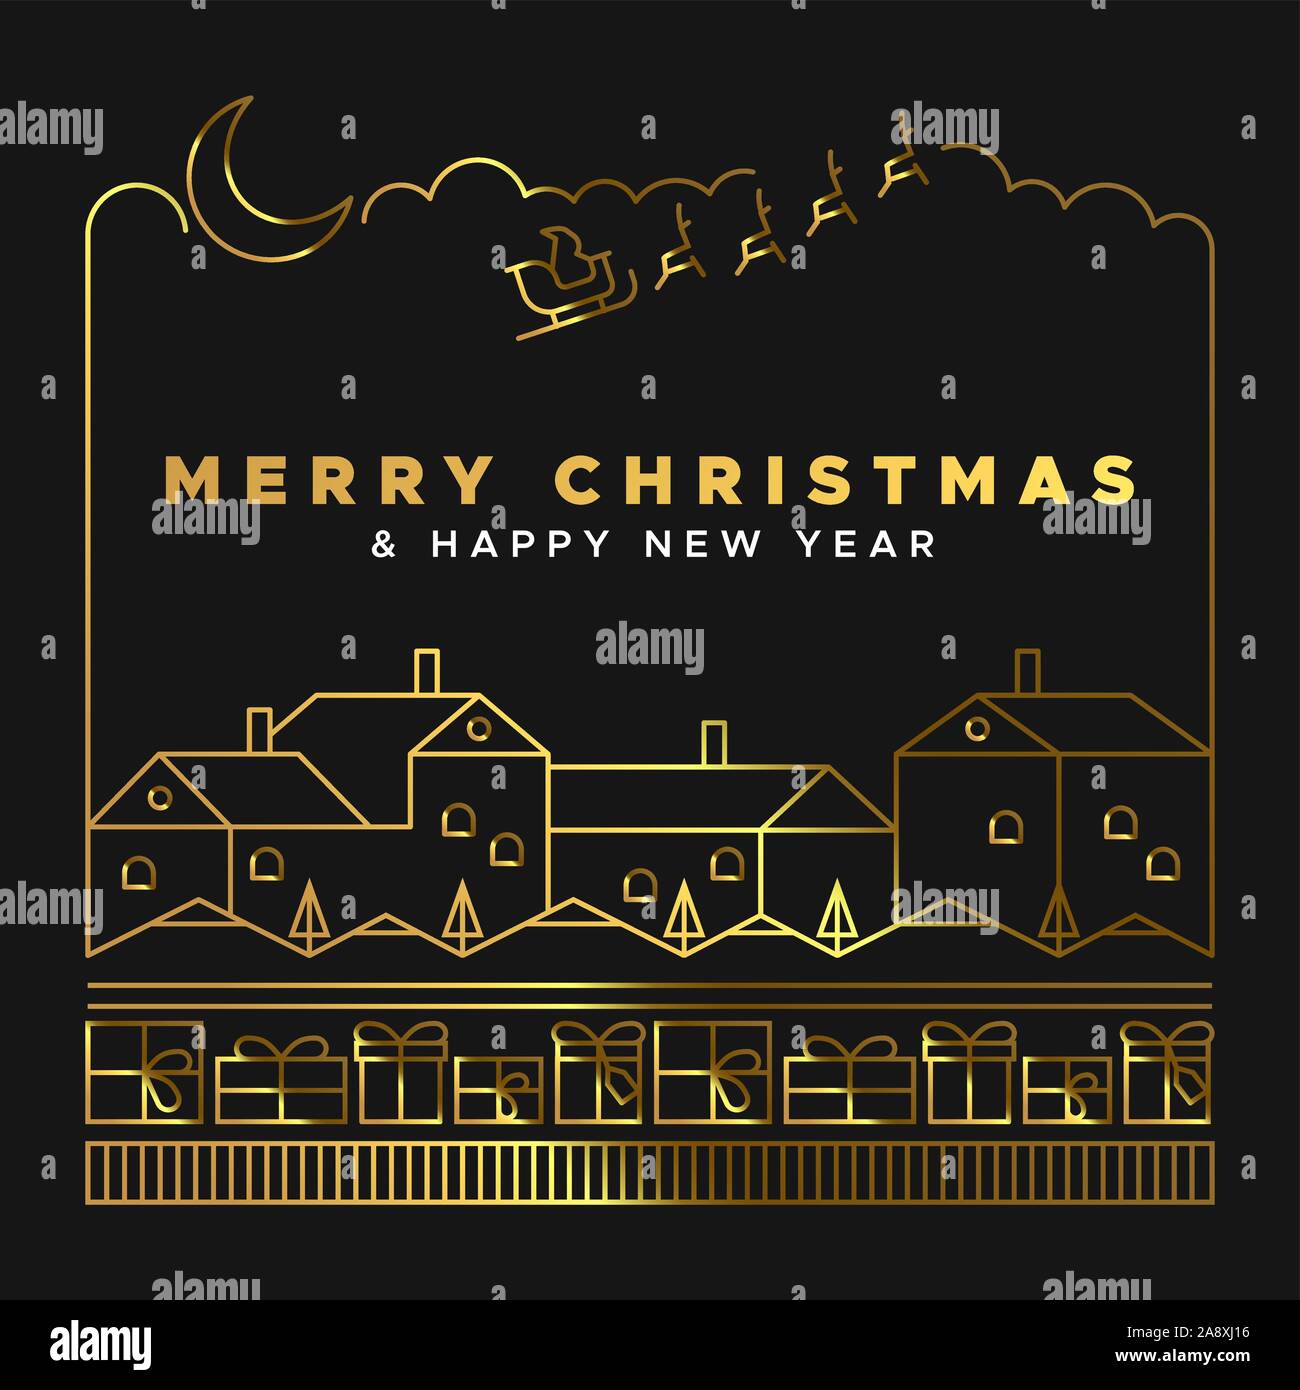 Auguri di Buon Natale felice anno nuovo biglietto di auguri illustrazione di luxury gold paesaggio invernale con case confezione regalo e santa claus sled in linea geometrica Illustrazione Vettoriale